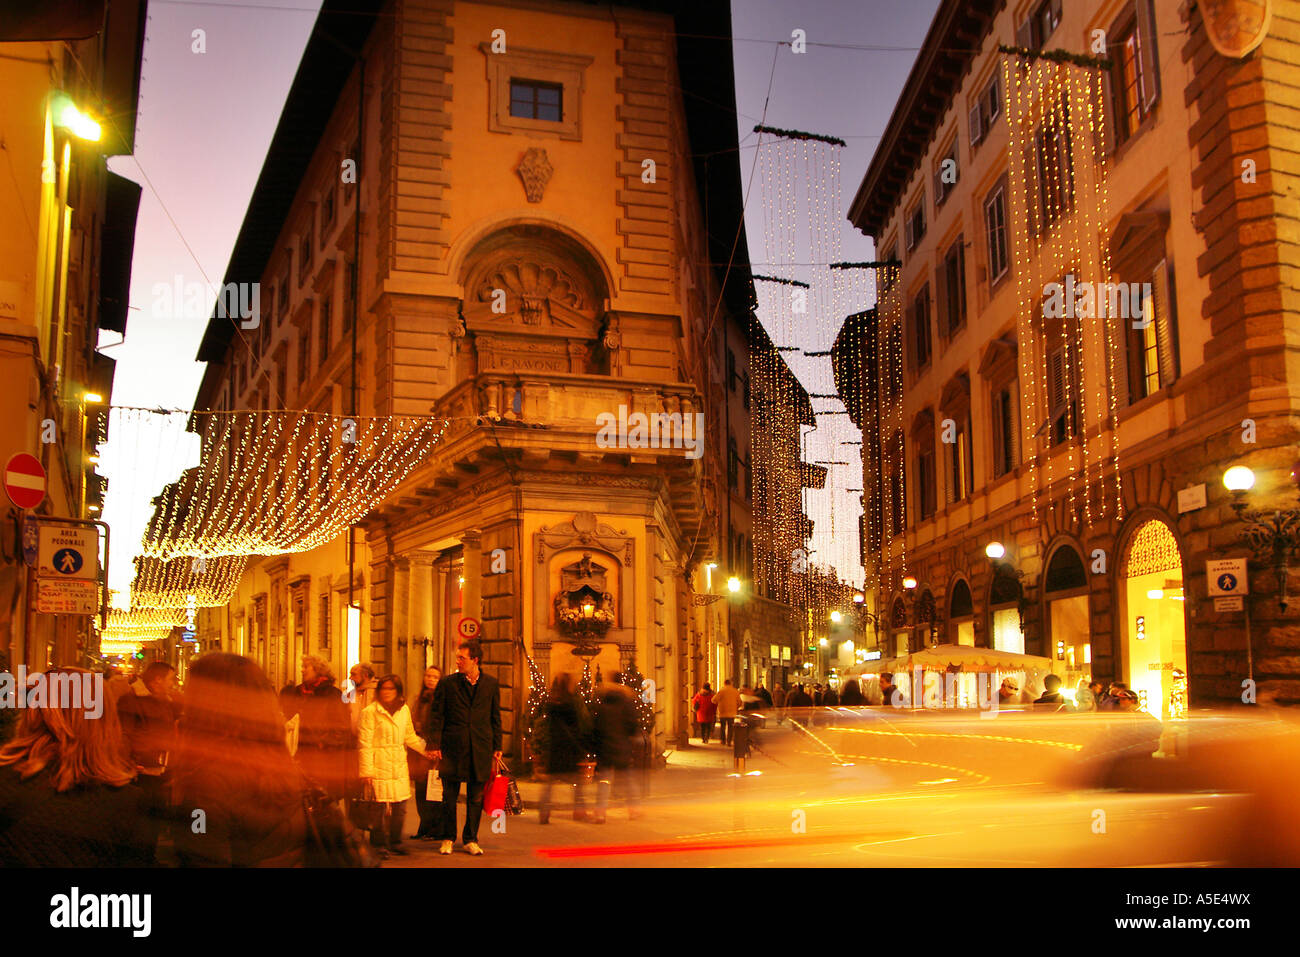 Firenze natale shoppers precipitosa di notte le luci di Natale e decorazioni, Firenze Italia Foto Stock